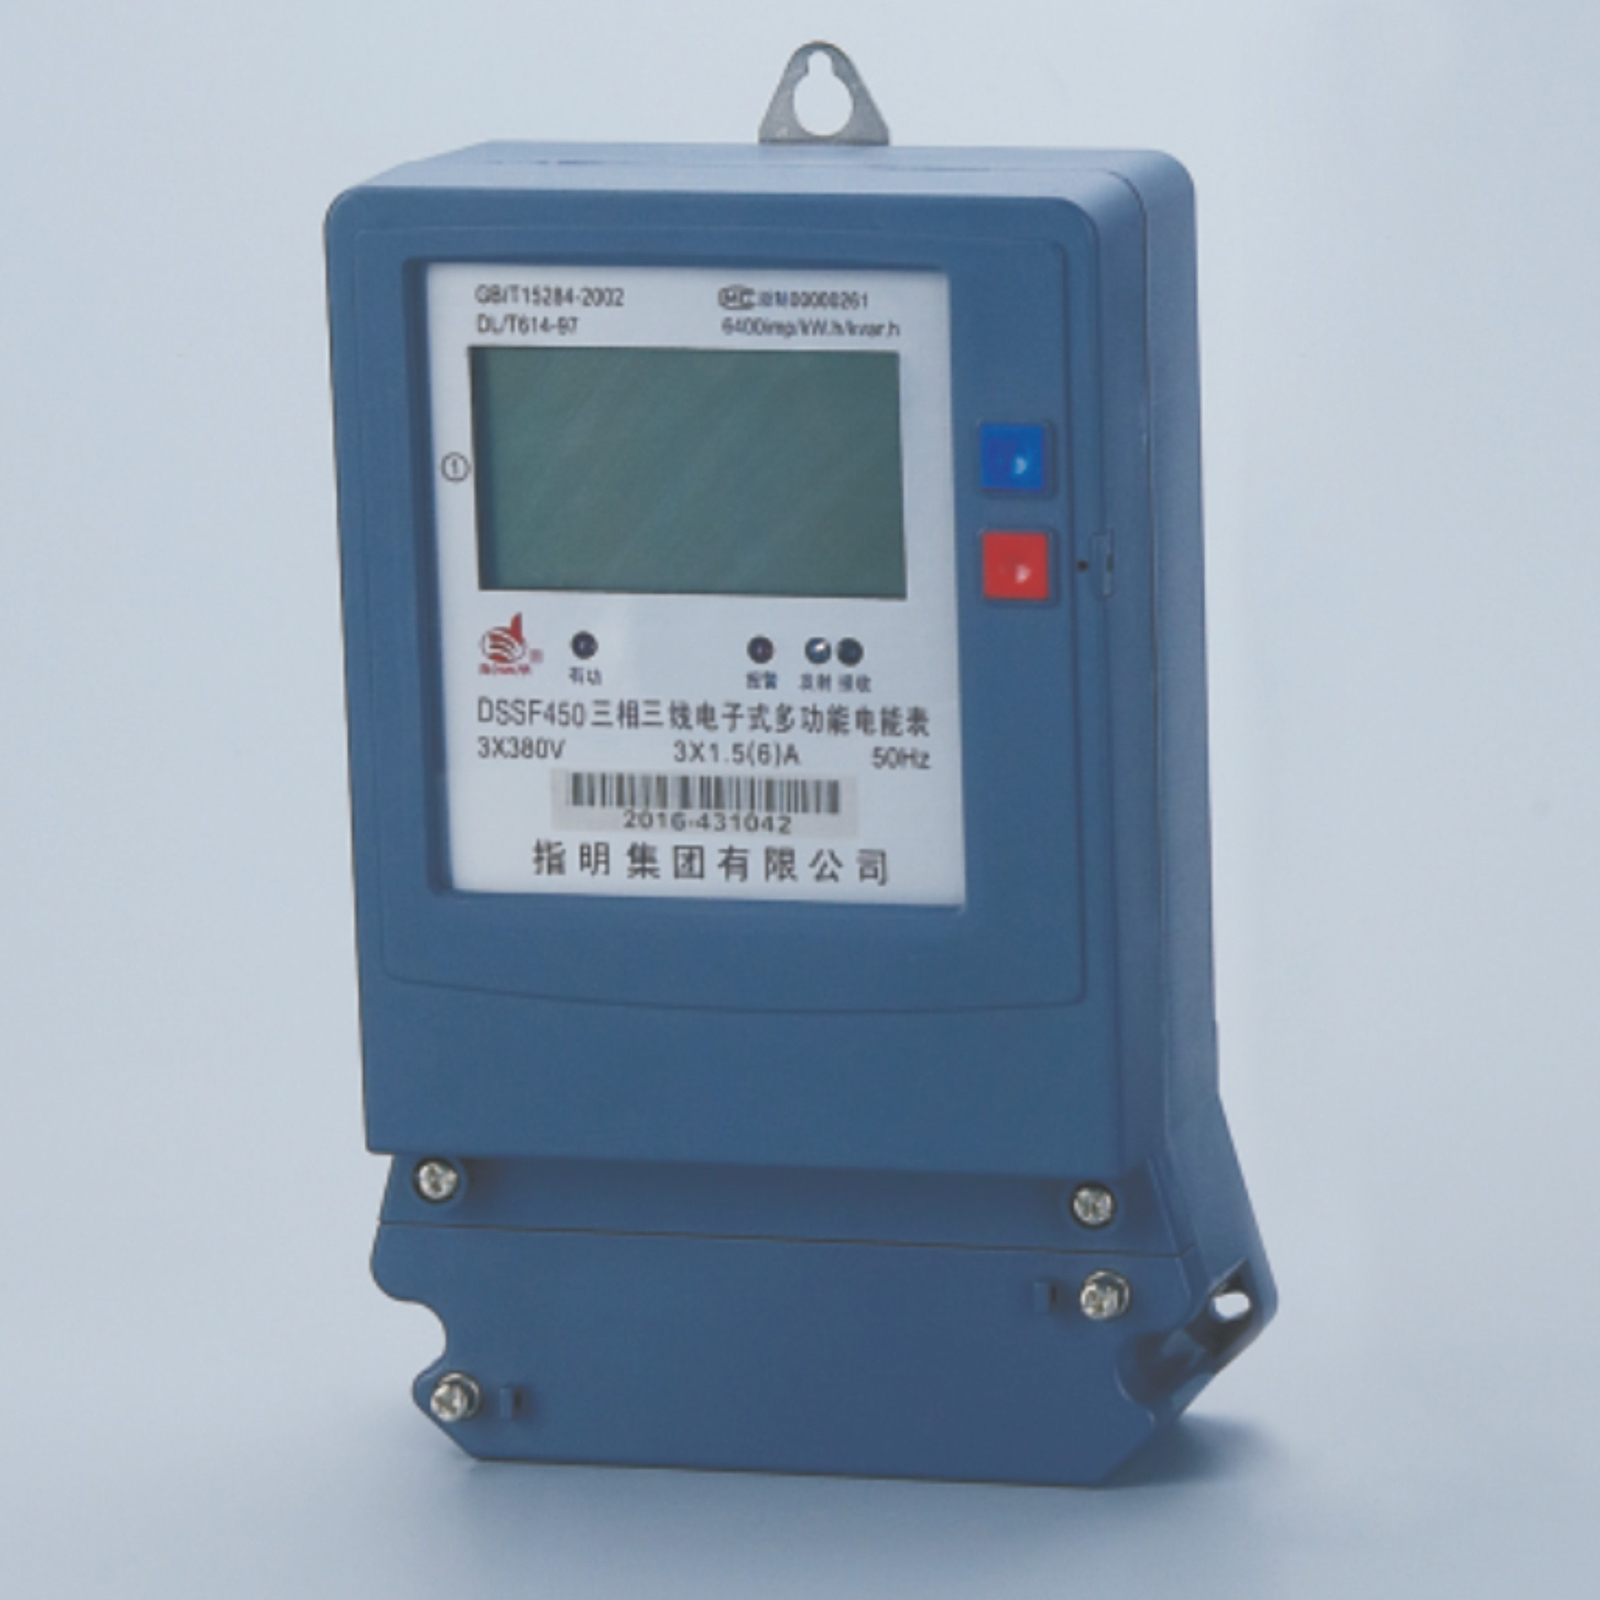 DTSF450, DSSF450  Three-phase electronic multi-tariff watt-hour meters 